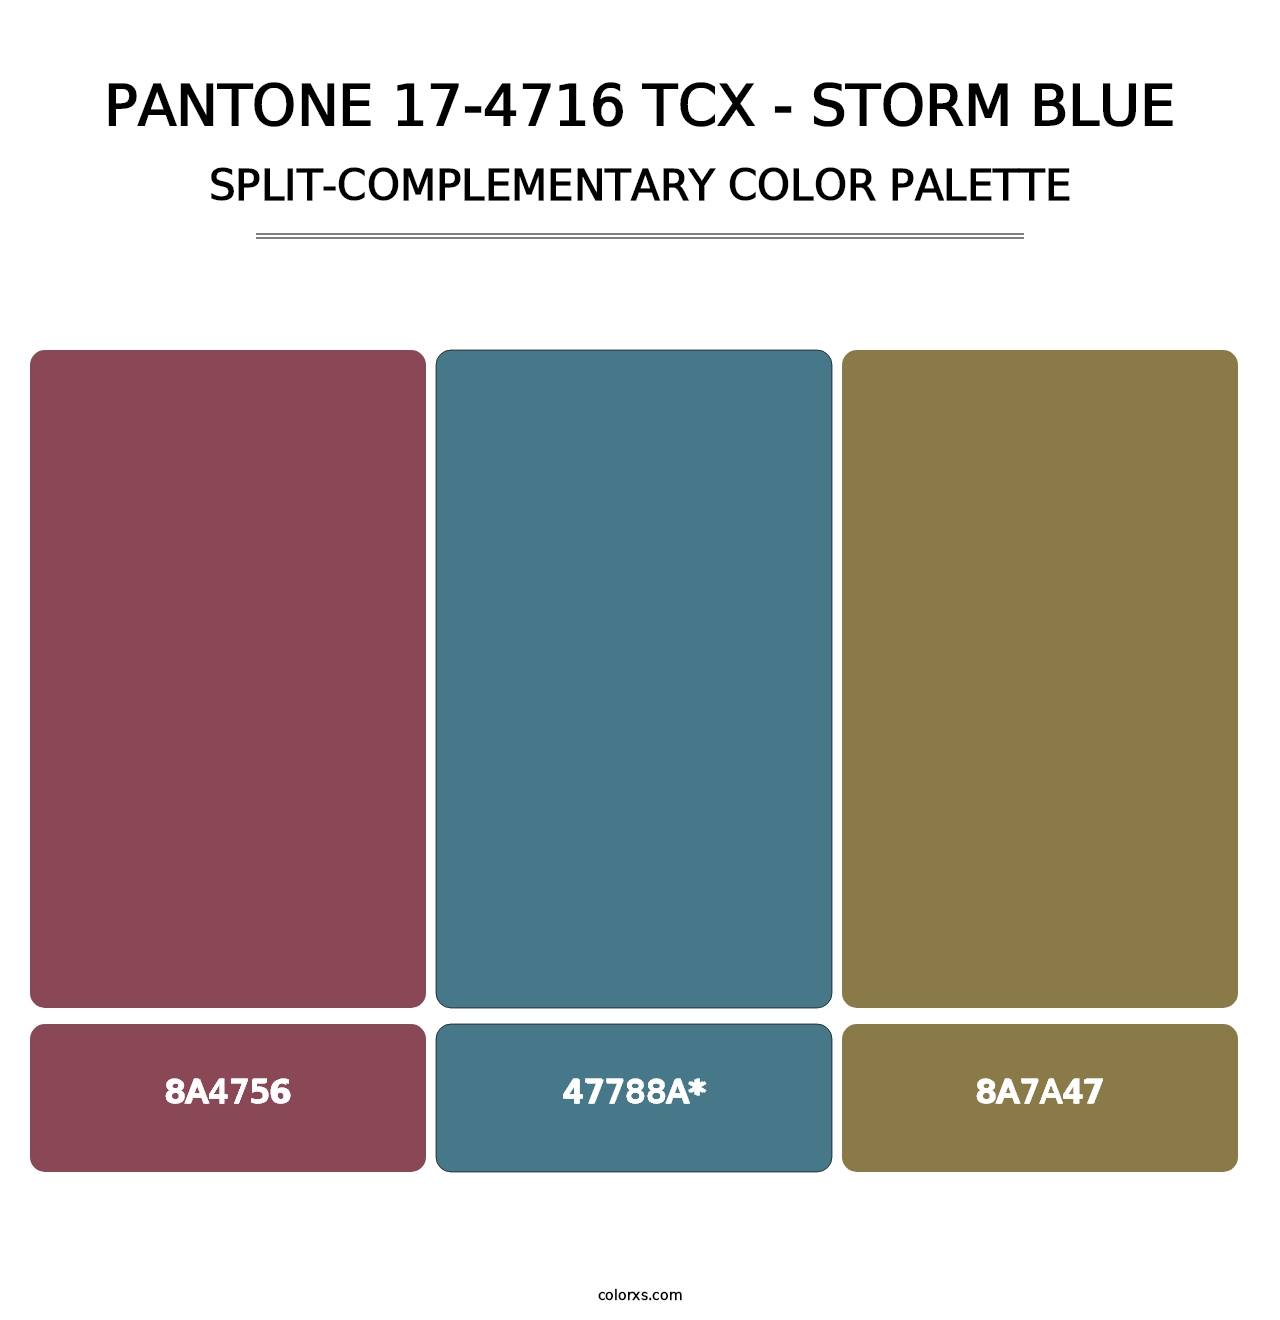 PANTONE 17-4716 TCX - Storm Blue - Split-Complementary Color Palette